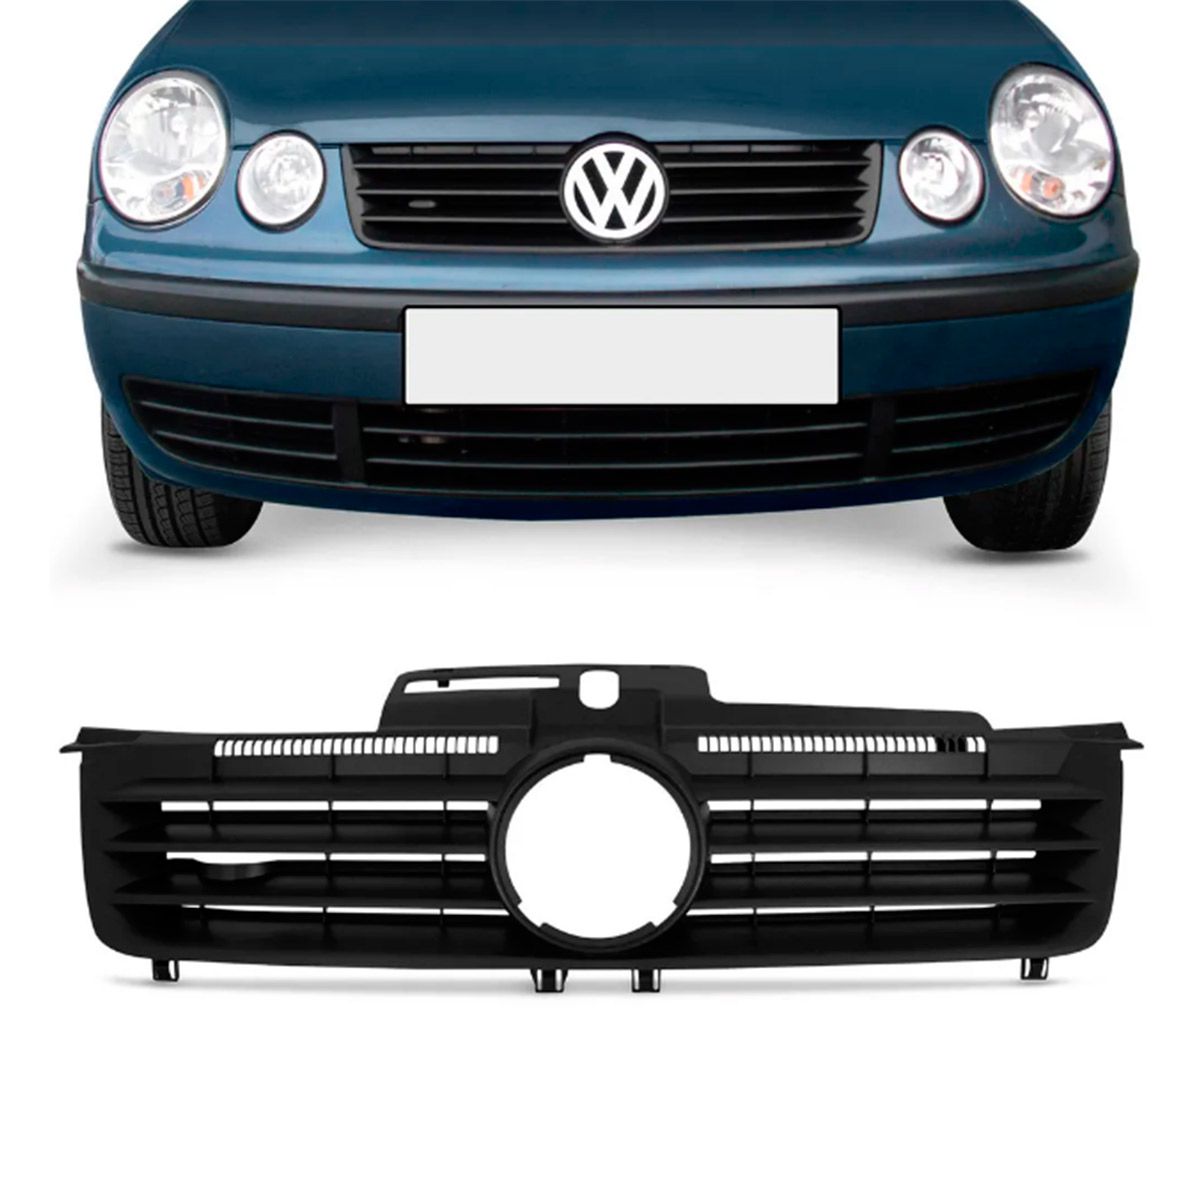 Grade Dianteira KJ Volkswagen Polo 2001 a 2005 Sem Emblema